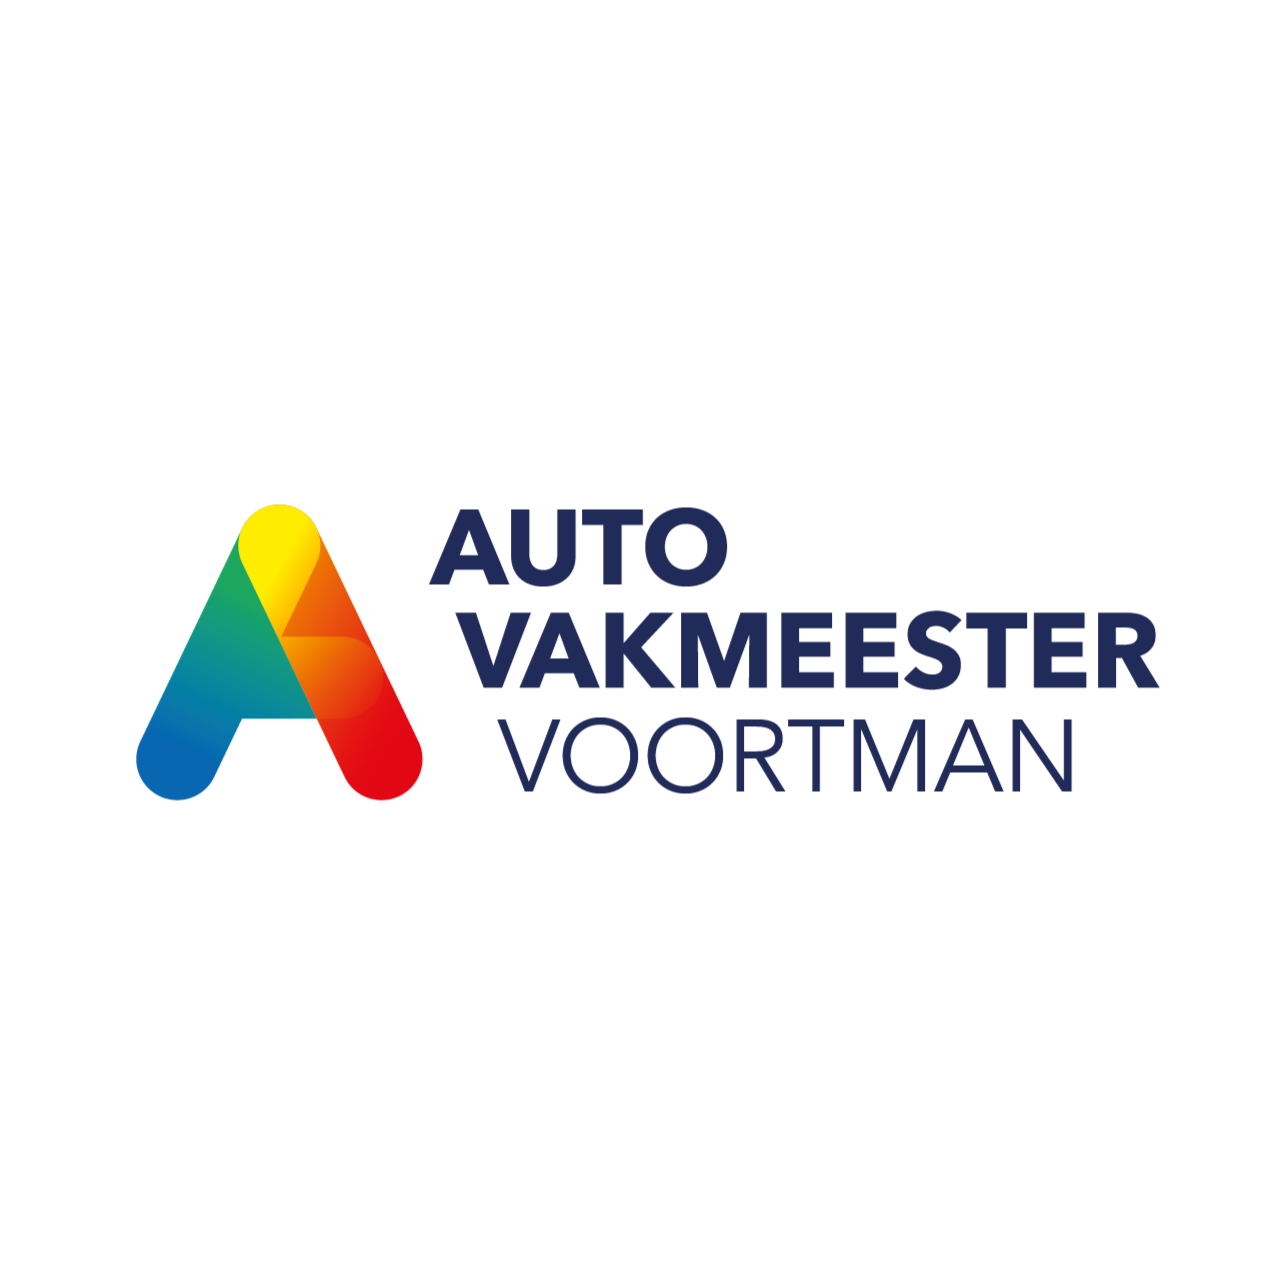 Autovakmeester Voortman Logo